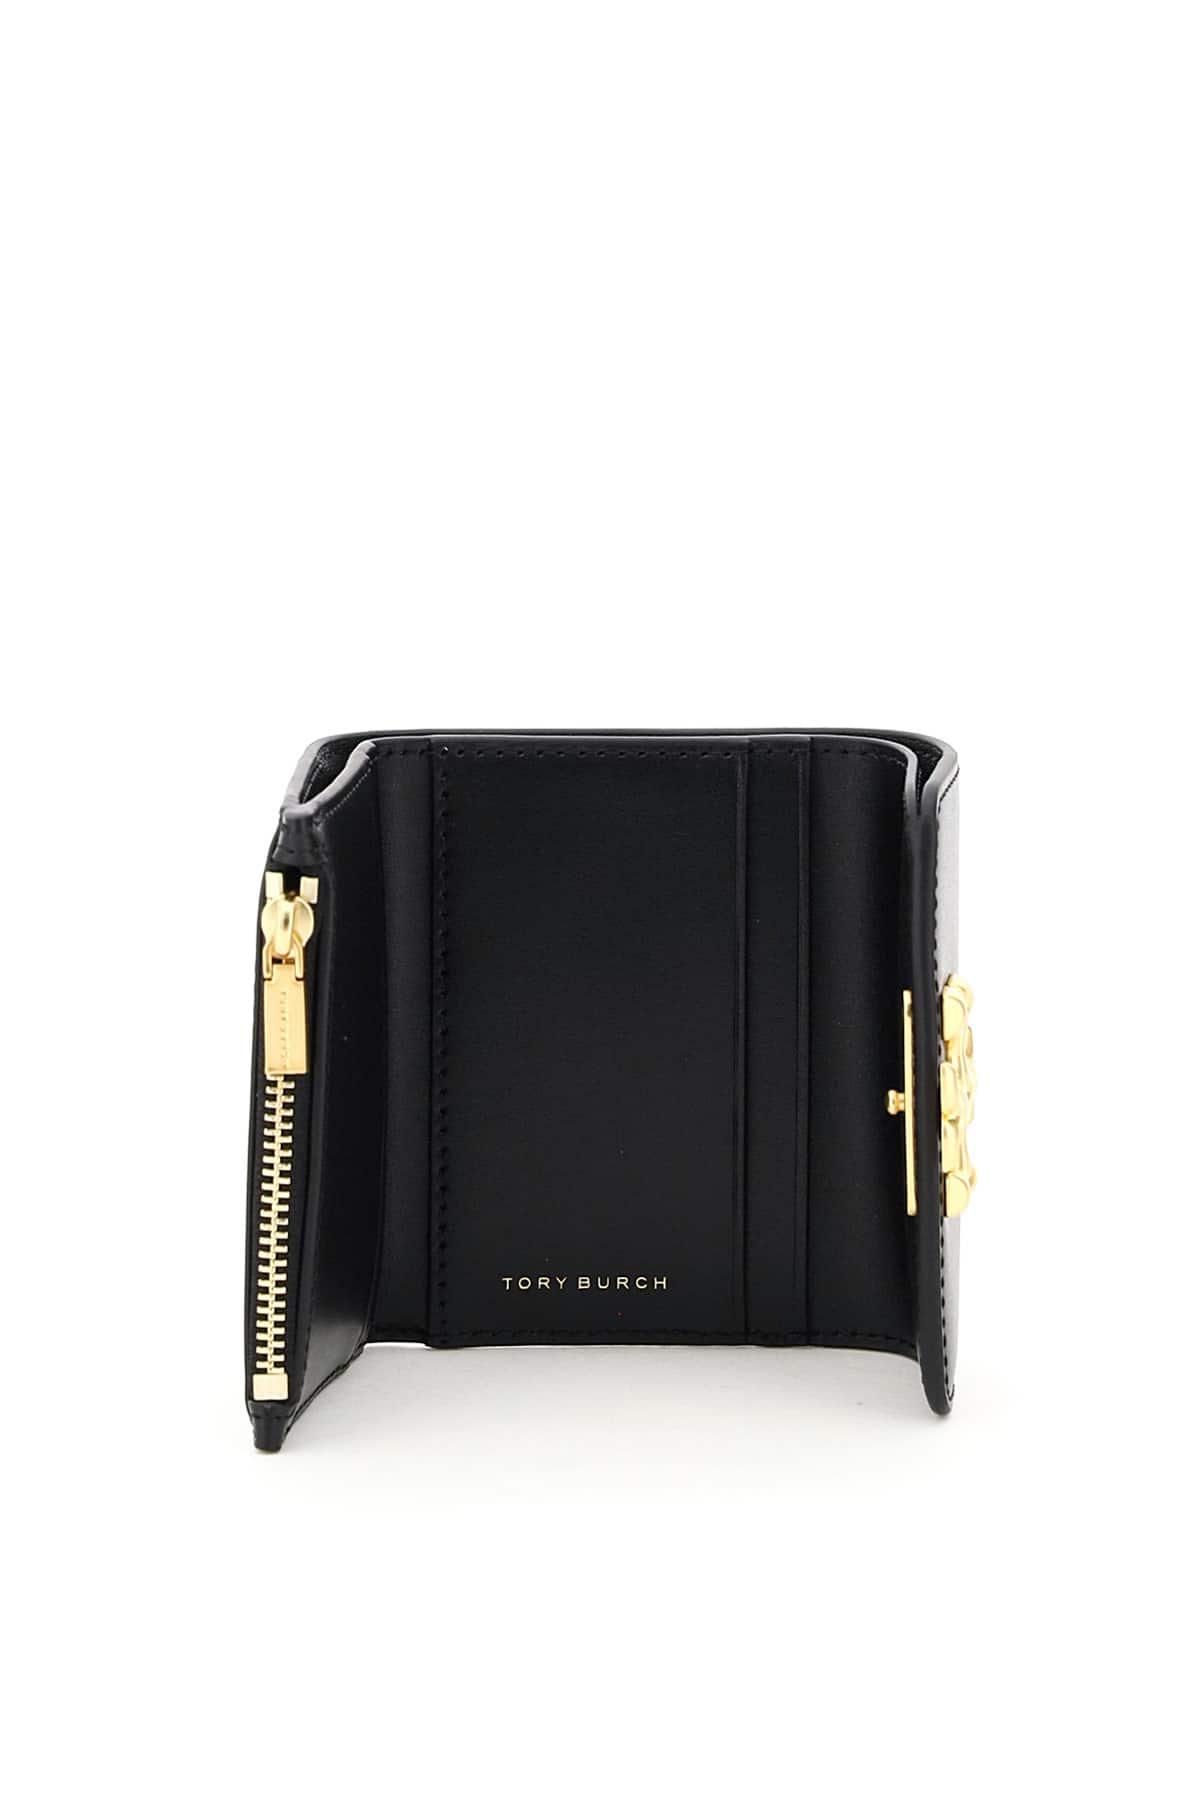 Tory Burch Leather Eleanor Mini Wallet in Black | Lyst